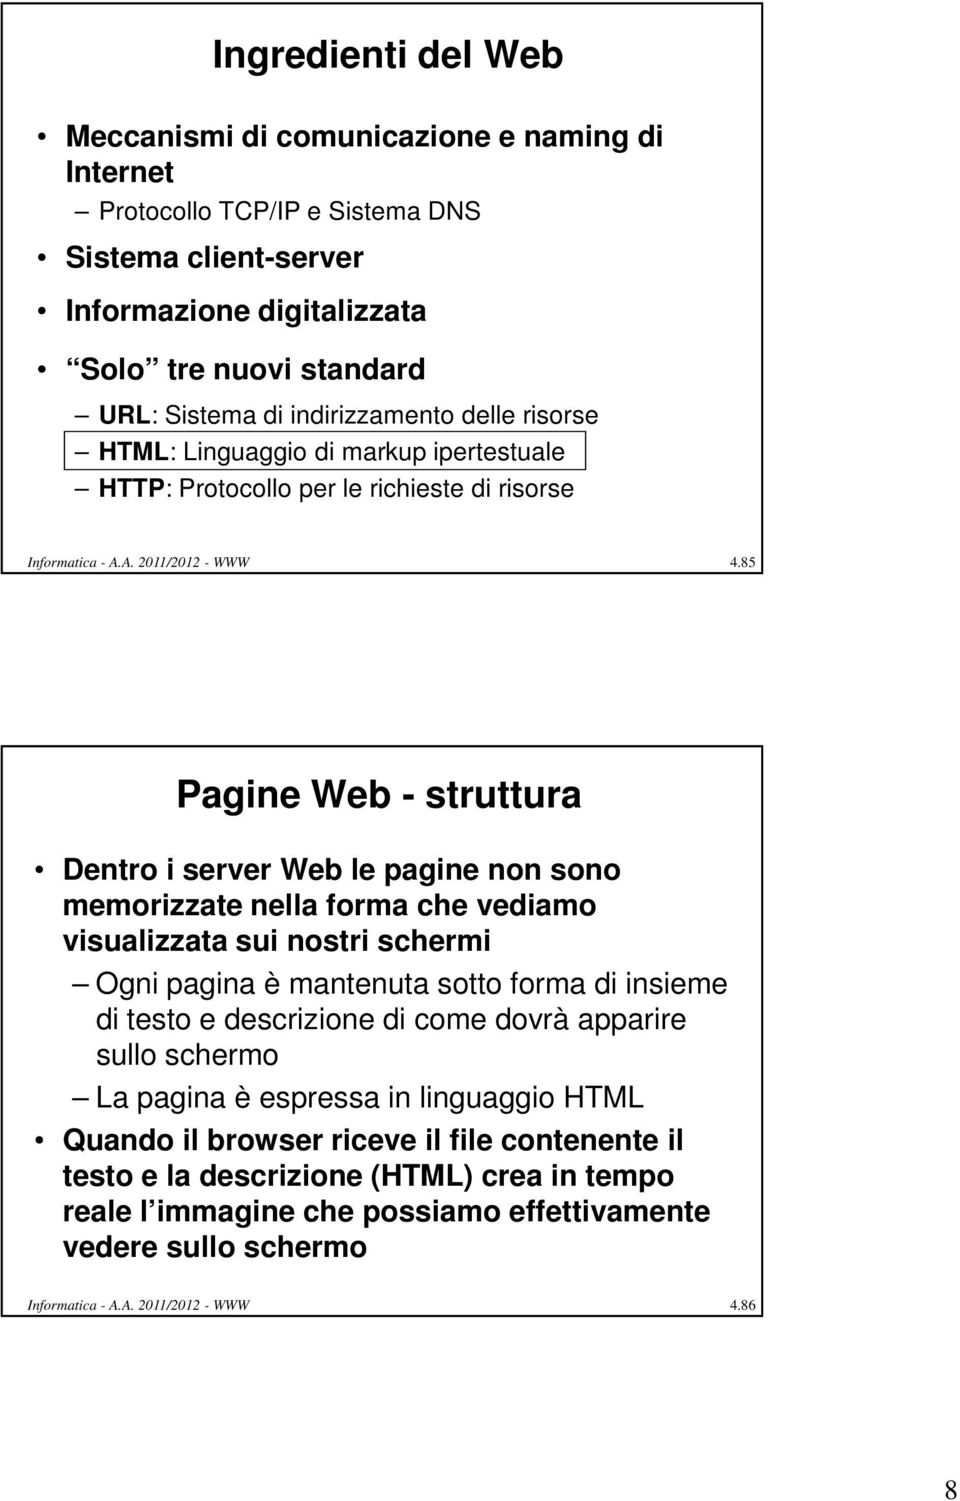 85 Pagine Web - struttura Dentro i server Web le pagine non sono memorizzate nella forma che vediamo visualizzata sui nostri schermi Ogni pagina è mantenuta sotto forma di insieme di testo e